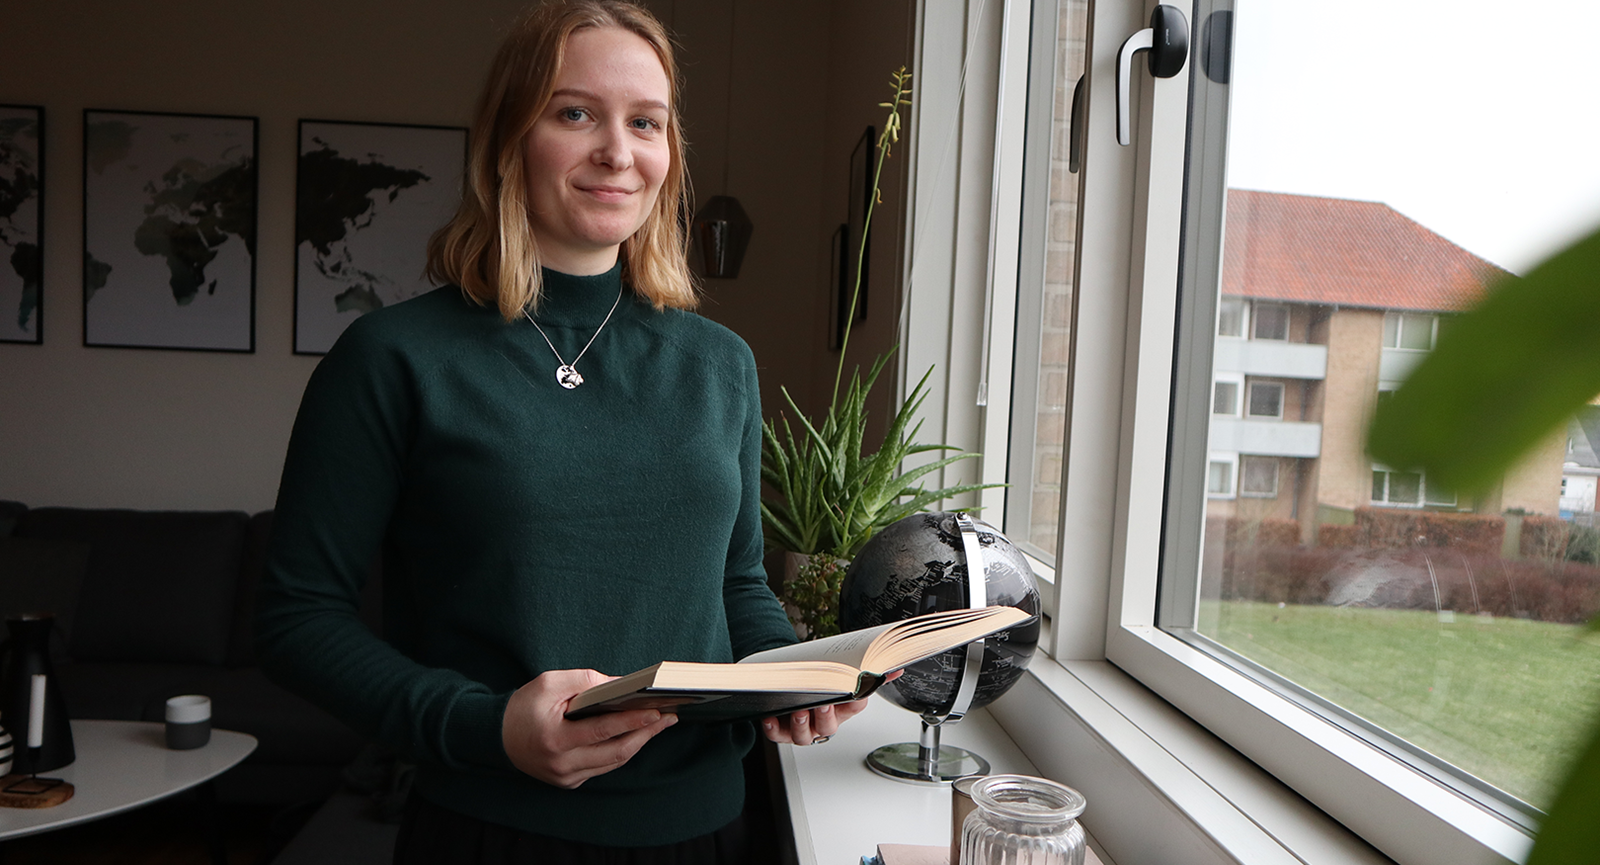 Markedsføringsøkonom Sarah Jensen i sit hjem med en bog i hånden tæt på vindue